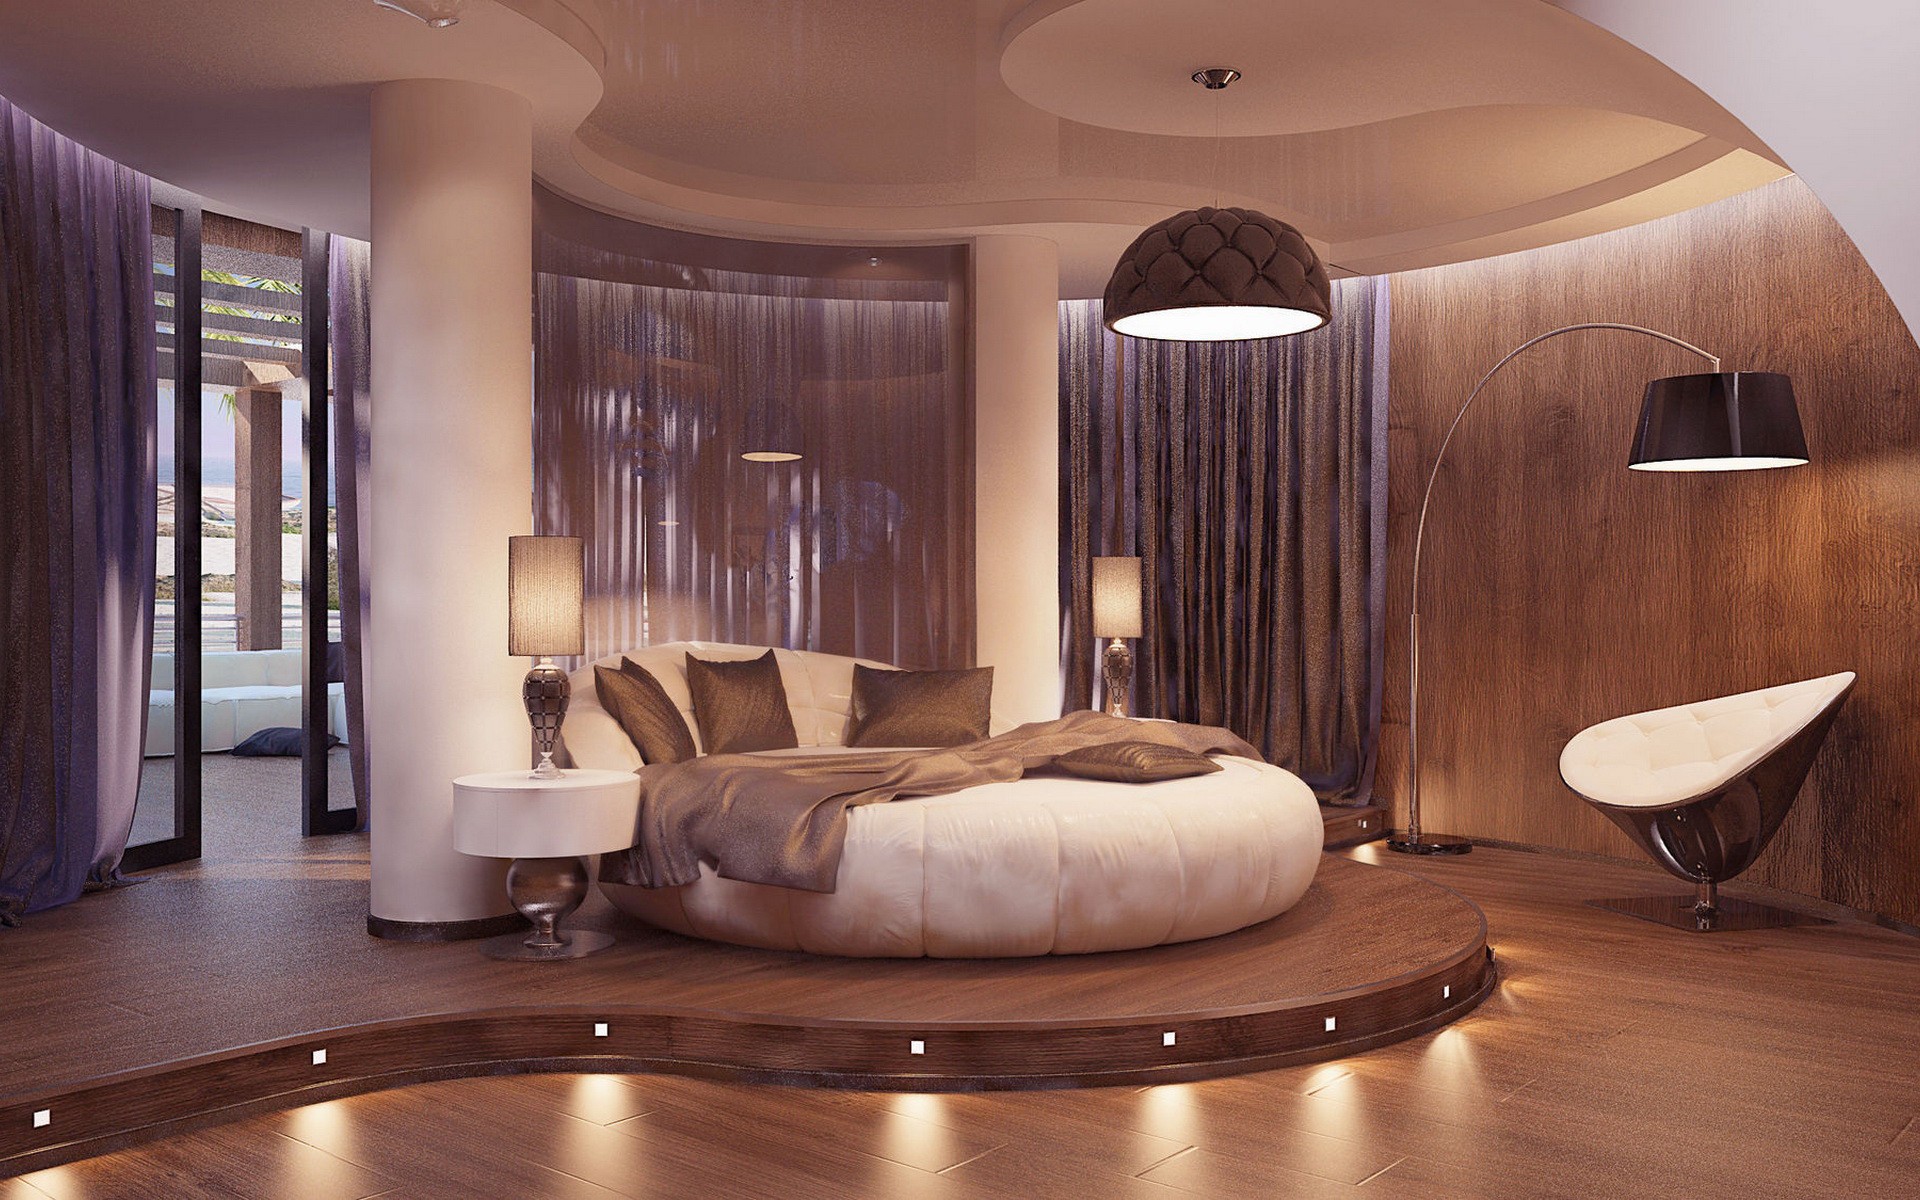 Видео красивых квартир. Круглая кровать в интерьере. Красивая спальня. Красивый интерьер спальни. Красивая квартира спальня.